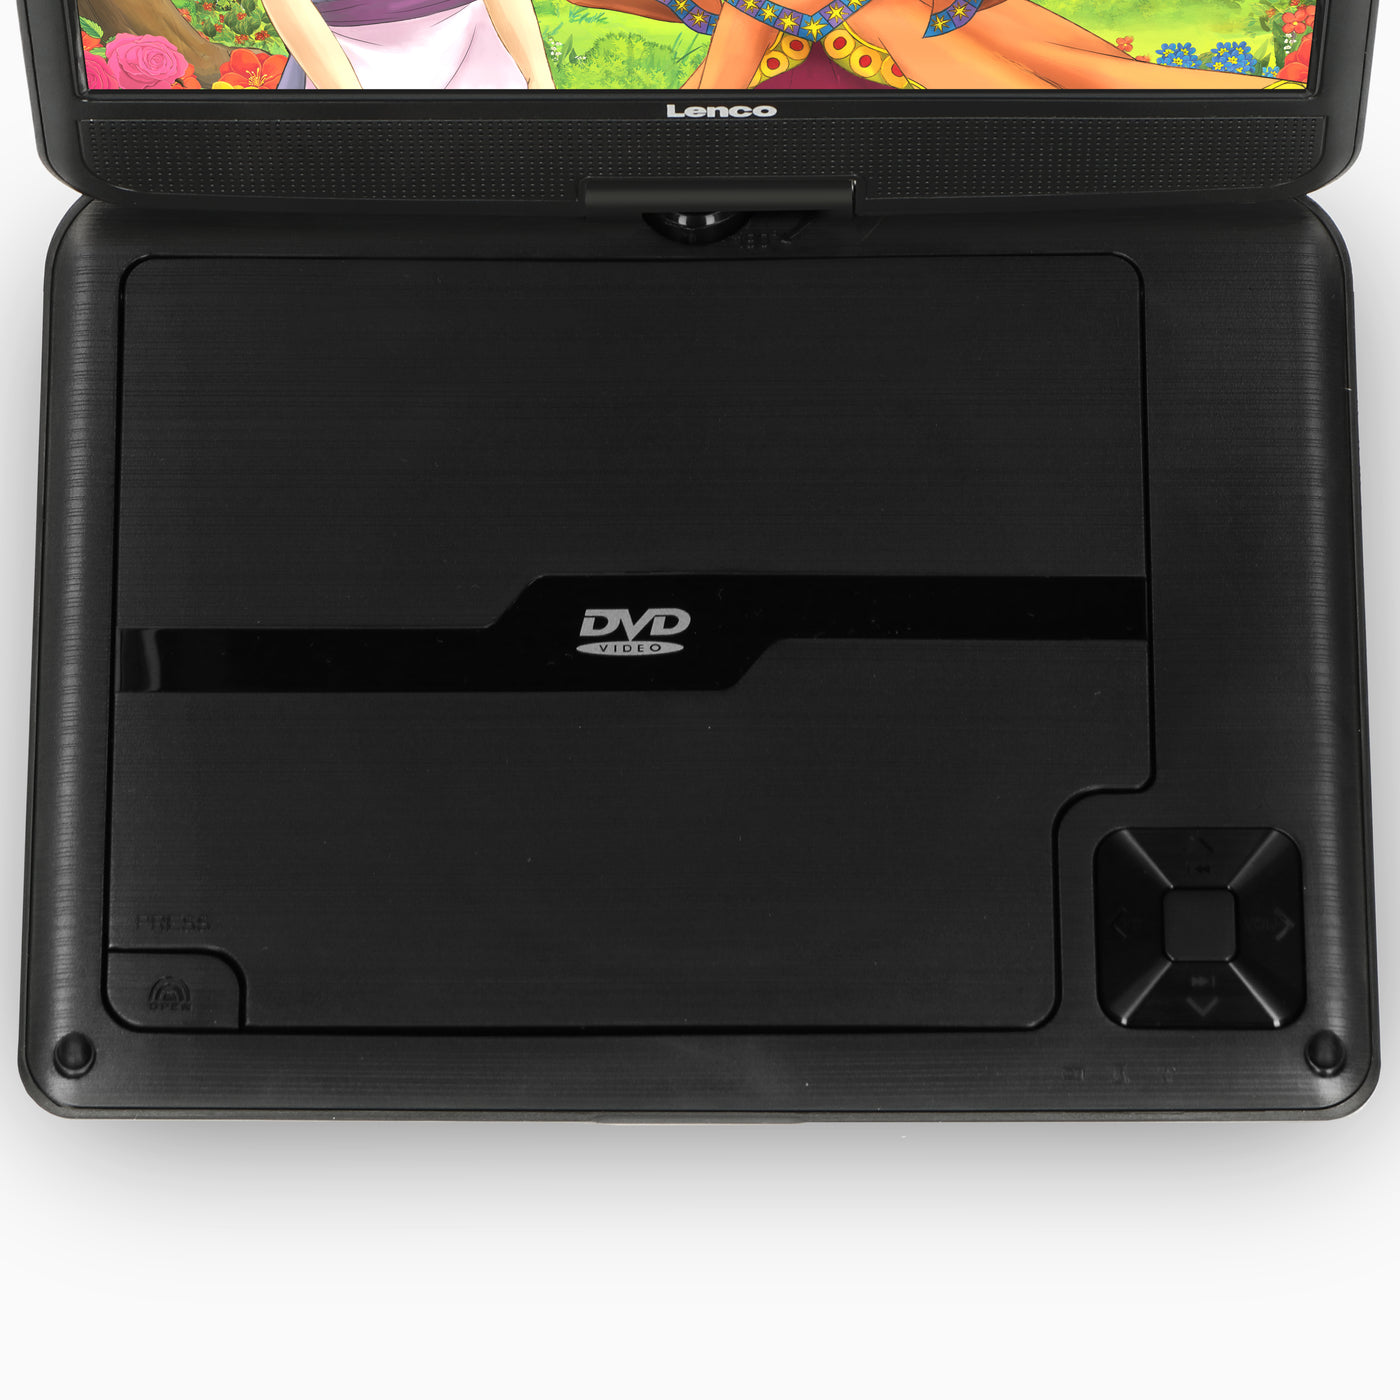 LENCO DVP-901BK - Przenośny odtwarzacz DVD 9" z portem USB - Czarny